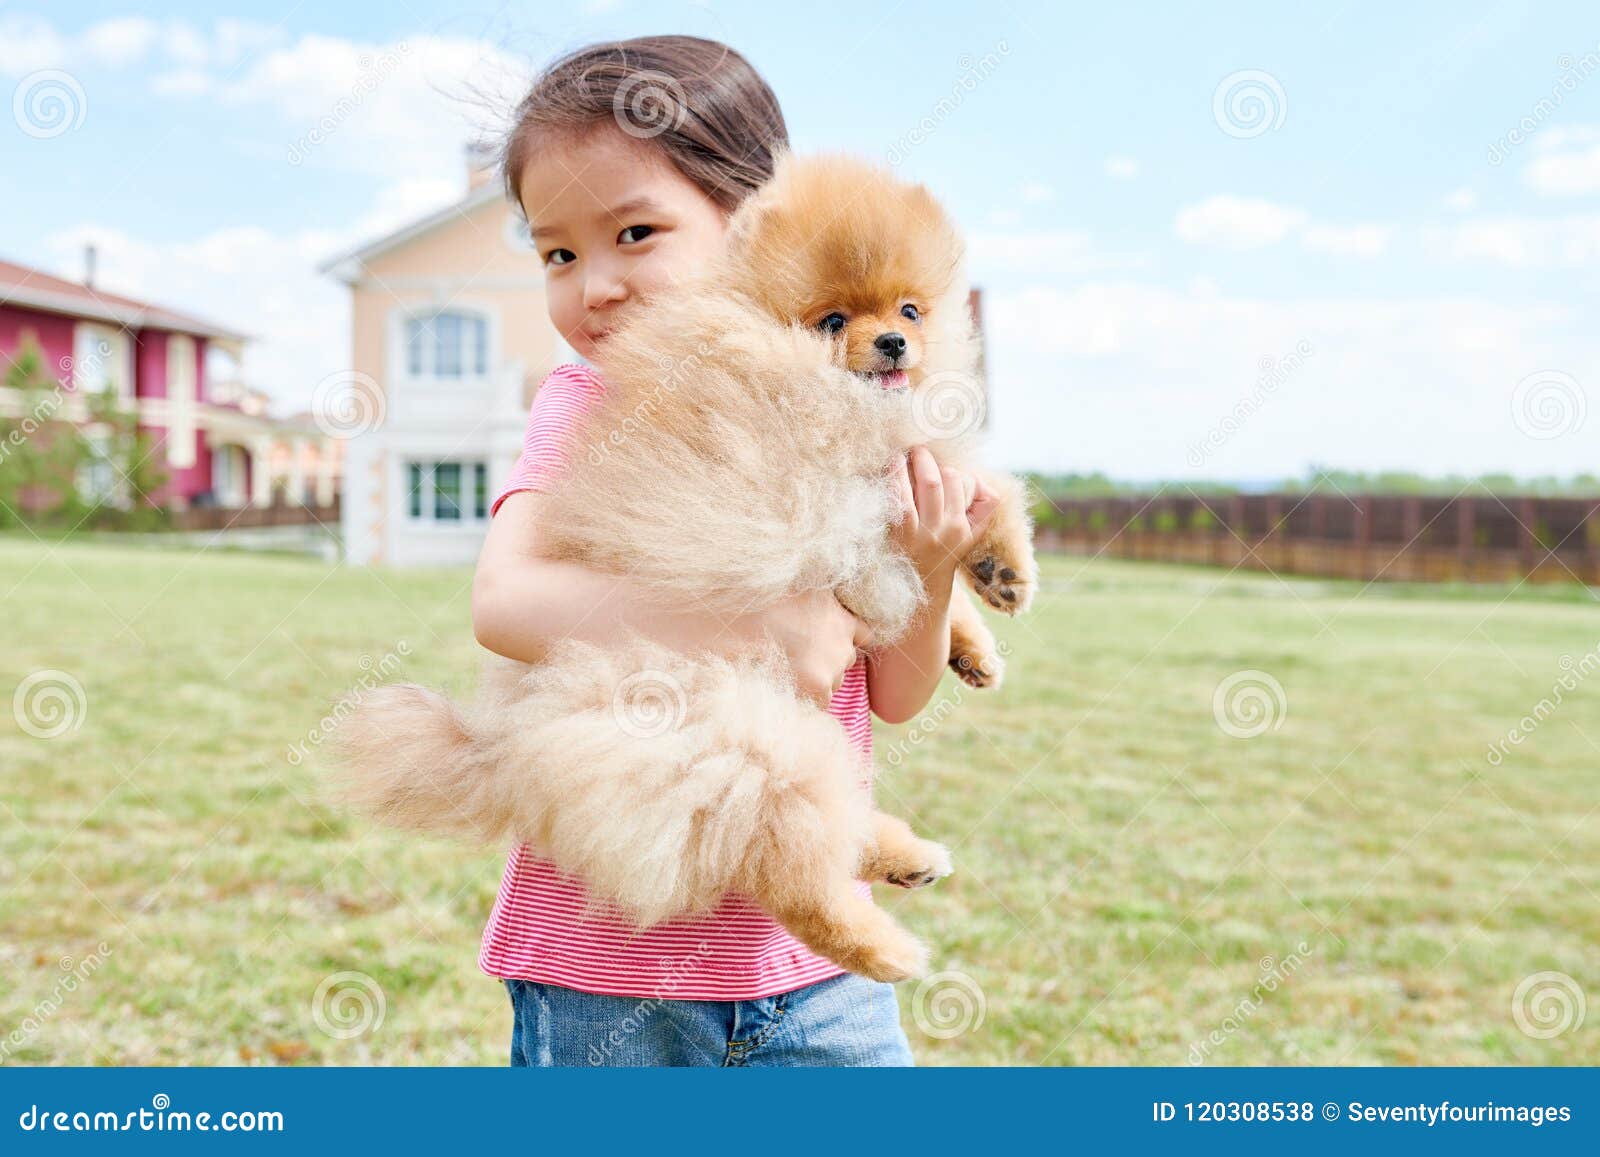 女孩和爱犬画象 库存照片. 图片 包括有 使用, 小狗, 本质, 猎犬, 少许, 愉快, 敌意, 嬉戏, 孩子 - 76868334